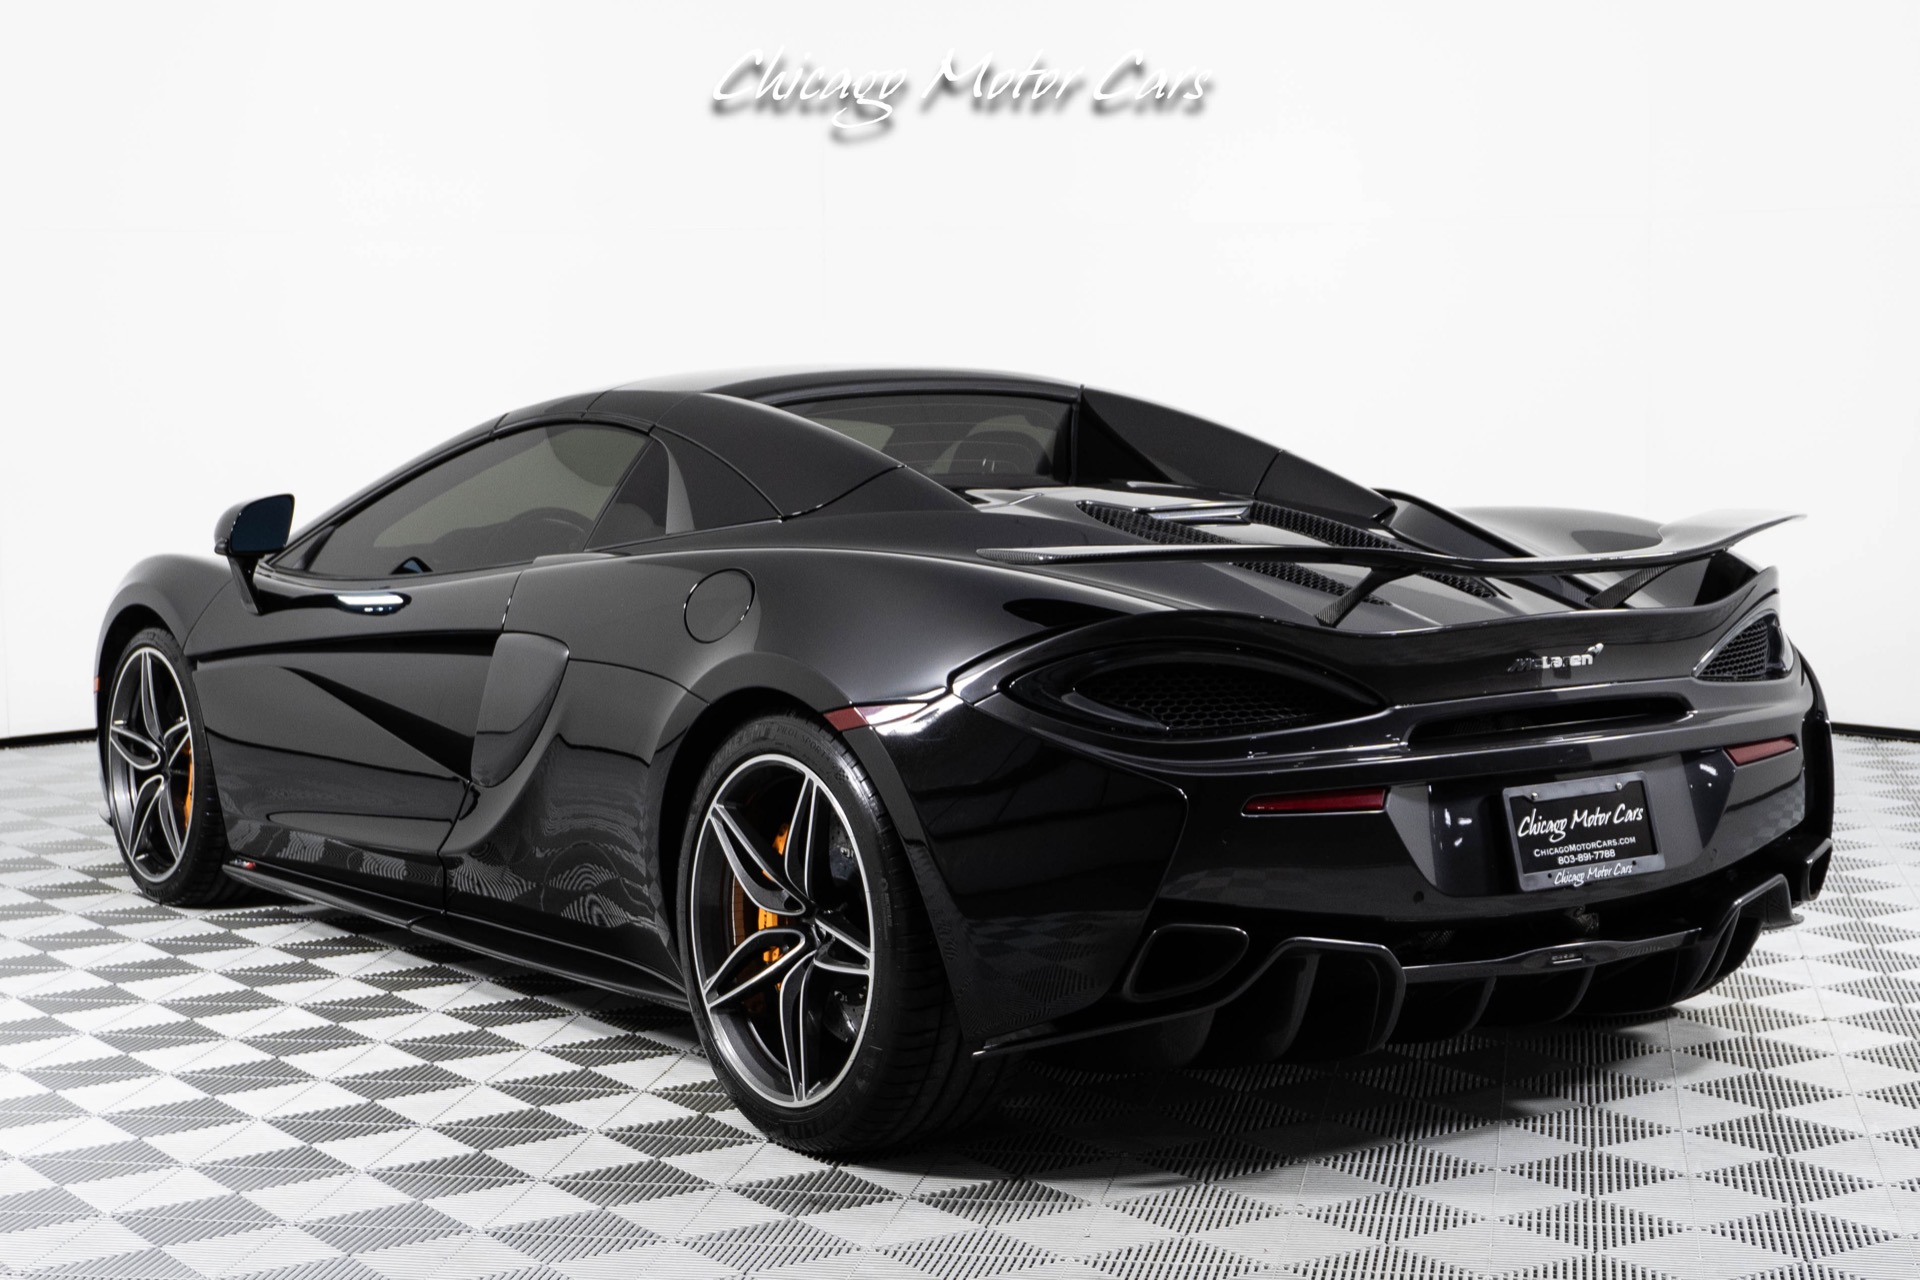 Used-2019-McLaren-570S-Spider-Convertible-Only-6K-Miles-MSO-Titanium-Exhaust-Carbon-Ceramic-Brakes